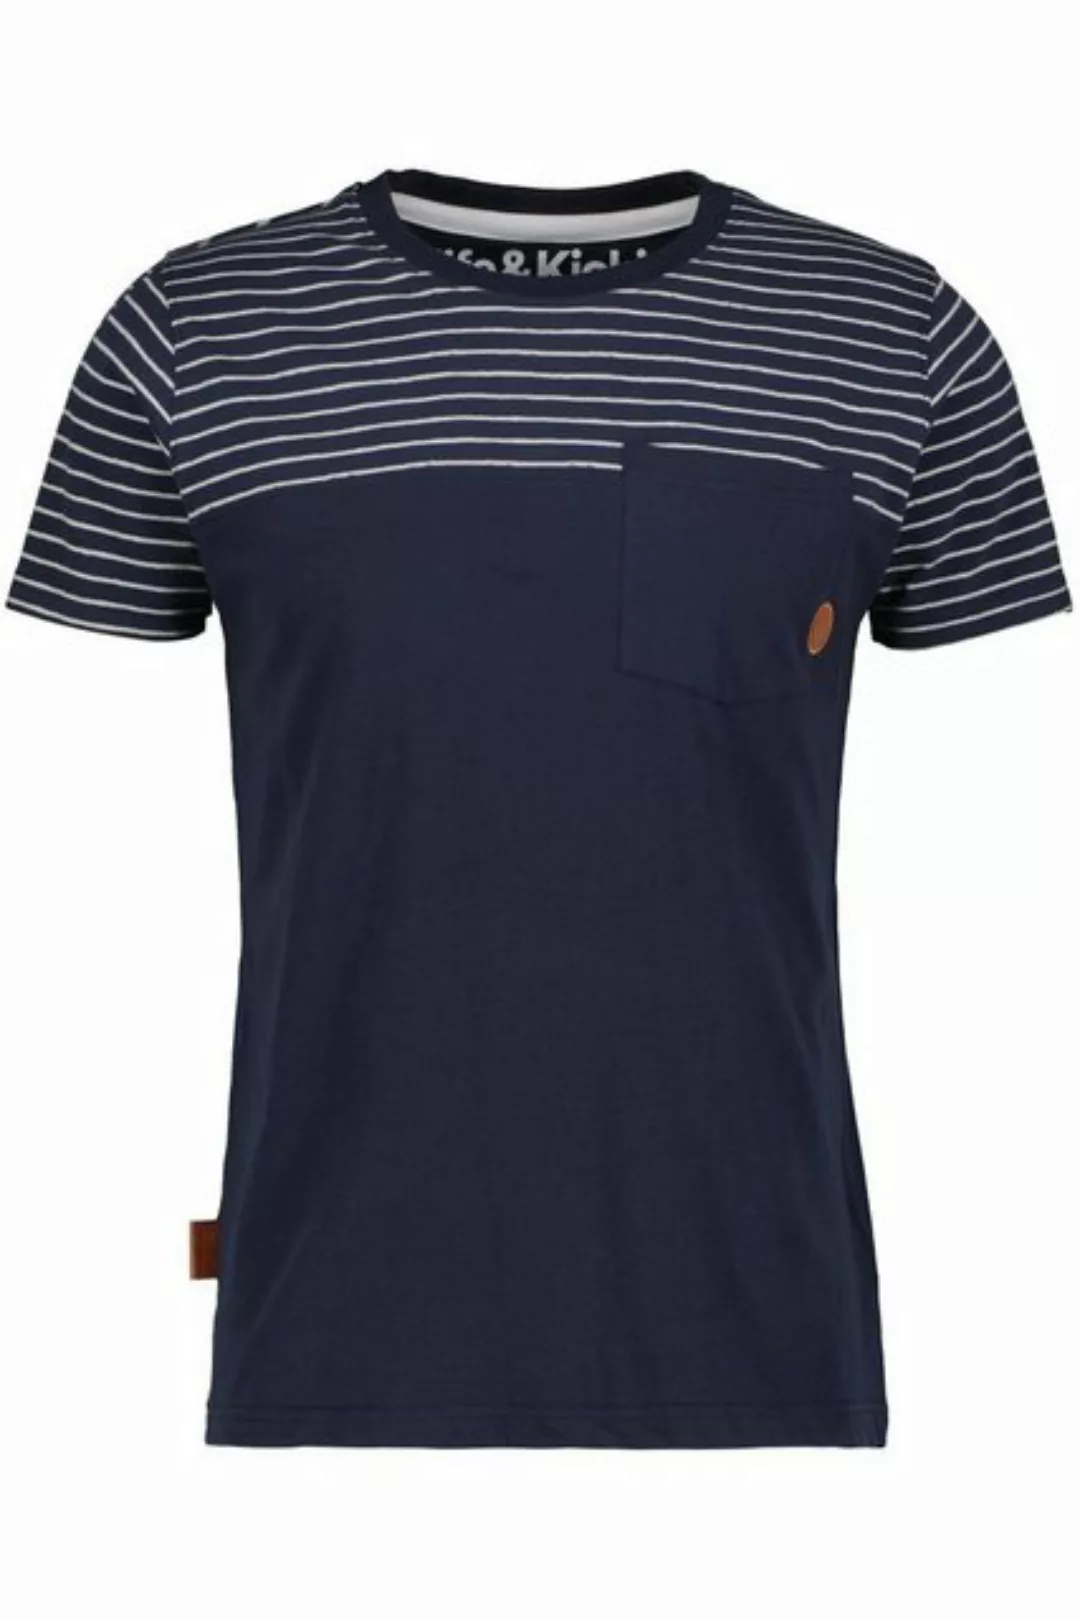 Alife & Kickin T-Shirt LeopoldAK Shirt günstig online kaufen